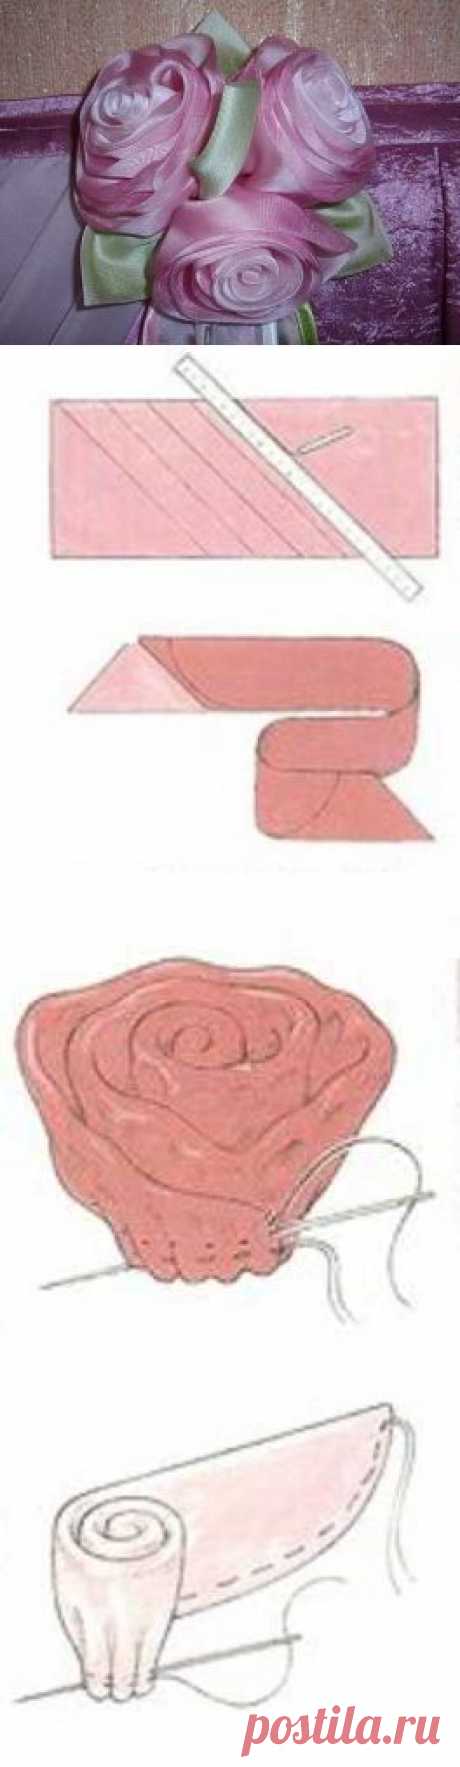 Изготовление букета роз из ткани для штор | Женский журнал